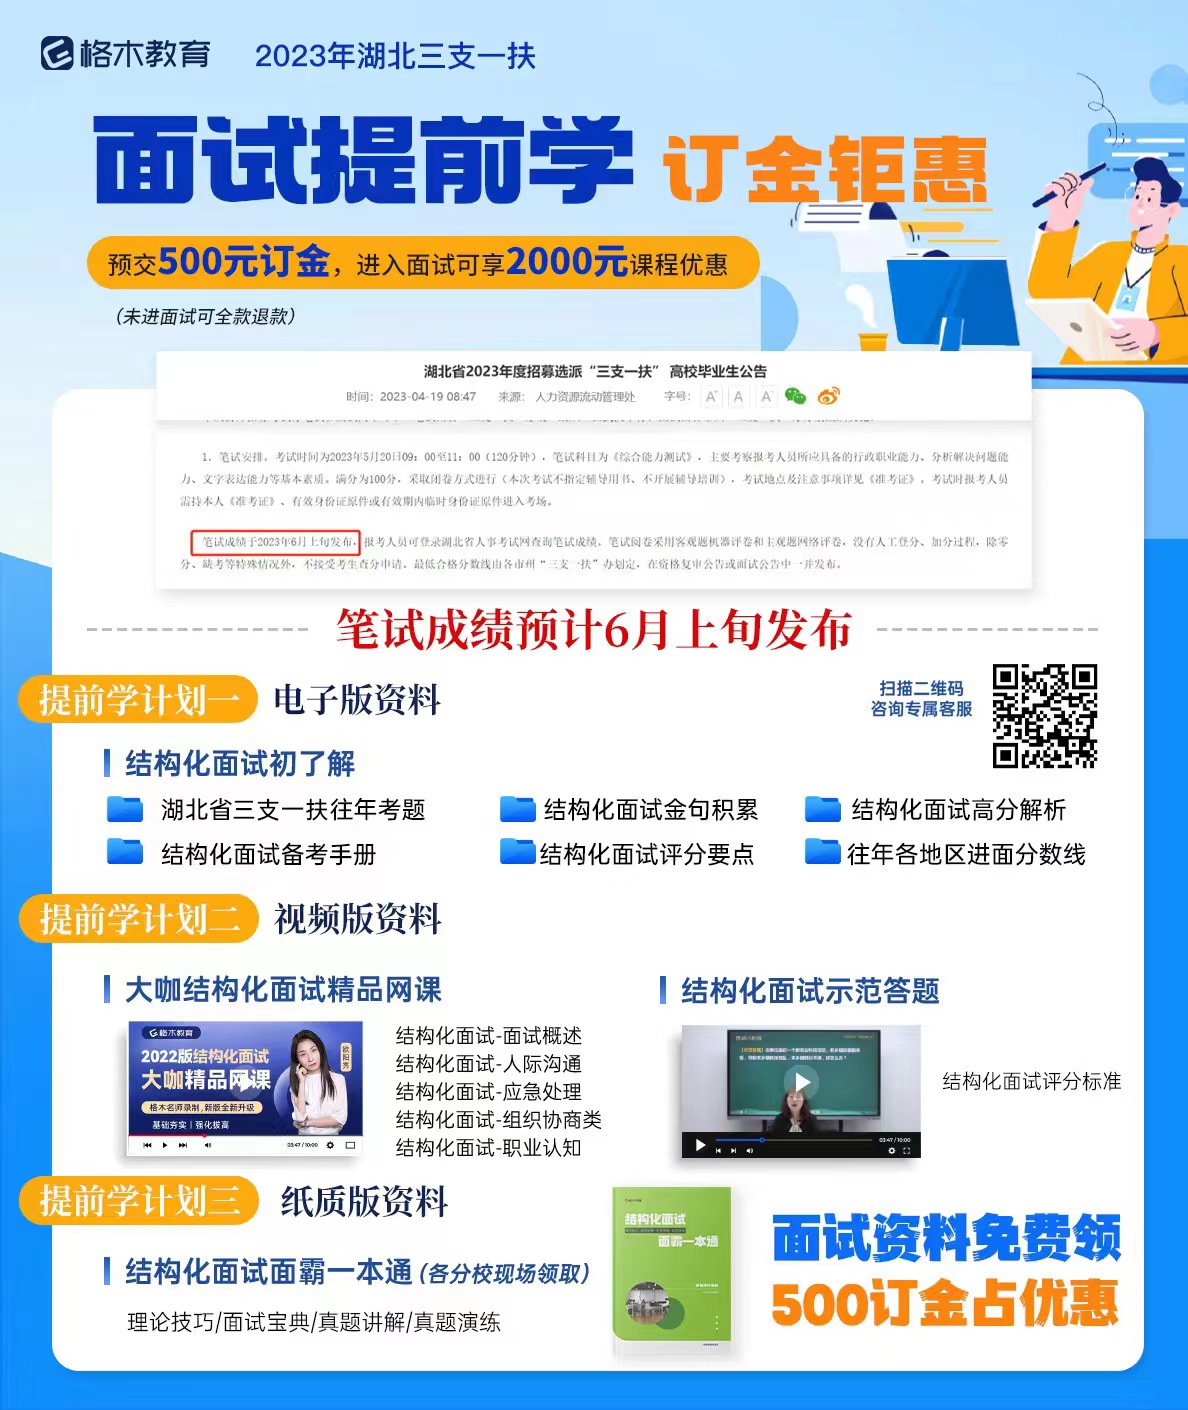 2023年湖北省三支一扶考試筆試擬加分人員名單公示